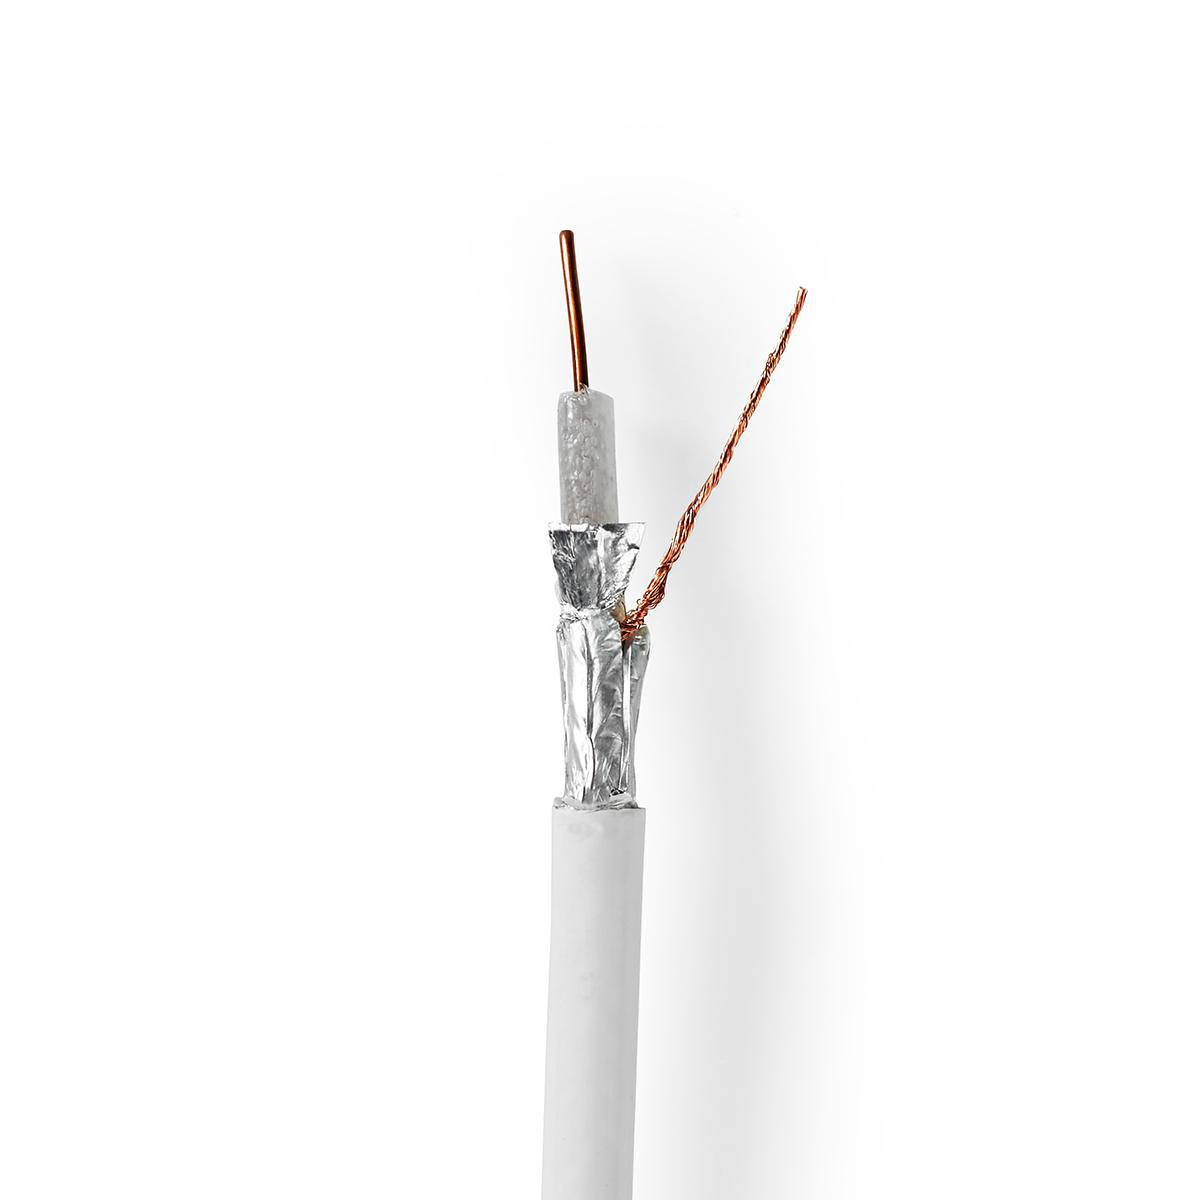 Nedis měděný koaxiální kabel 6.9 mm, odolný proti rušení 4G/LTE sítí, 25 m, bílá (CSBG4050WT250)